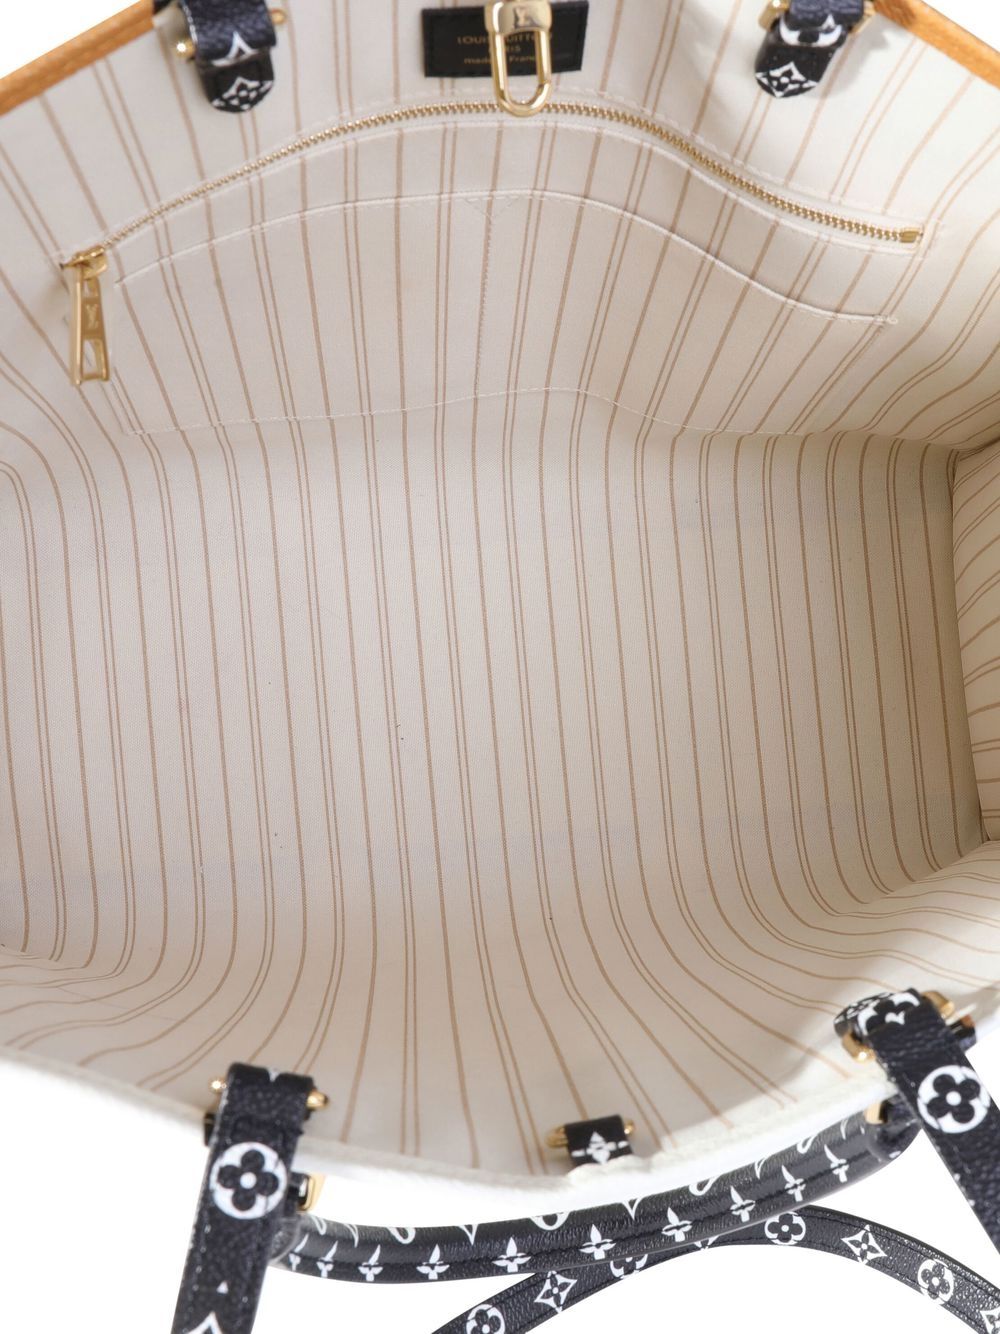 Louis Vuitton presents it's new bag, the Monogram Giant Jungle